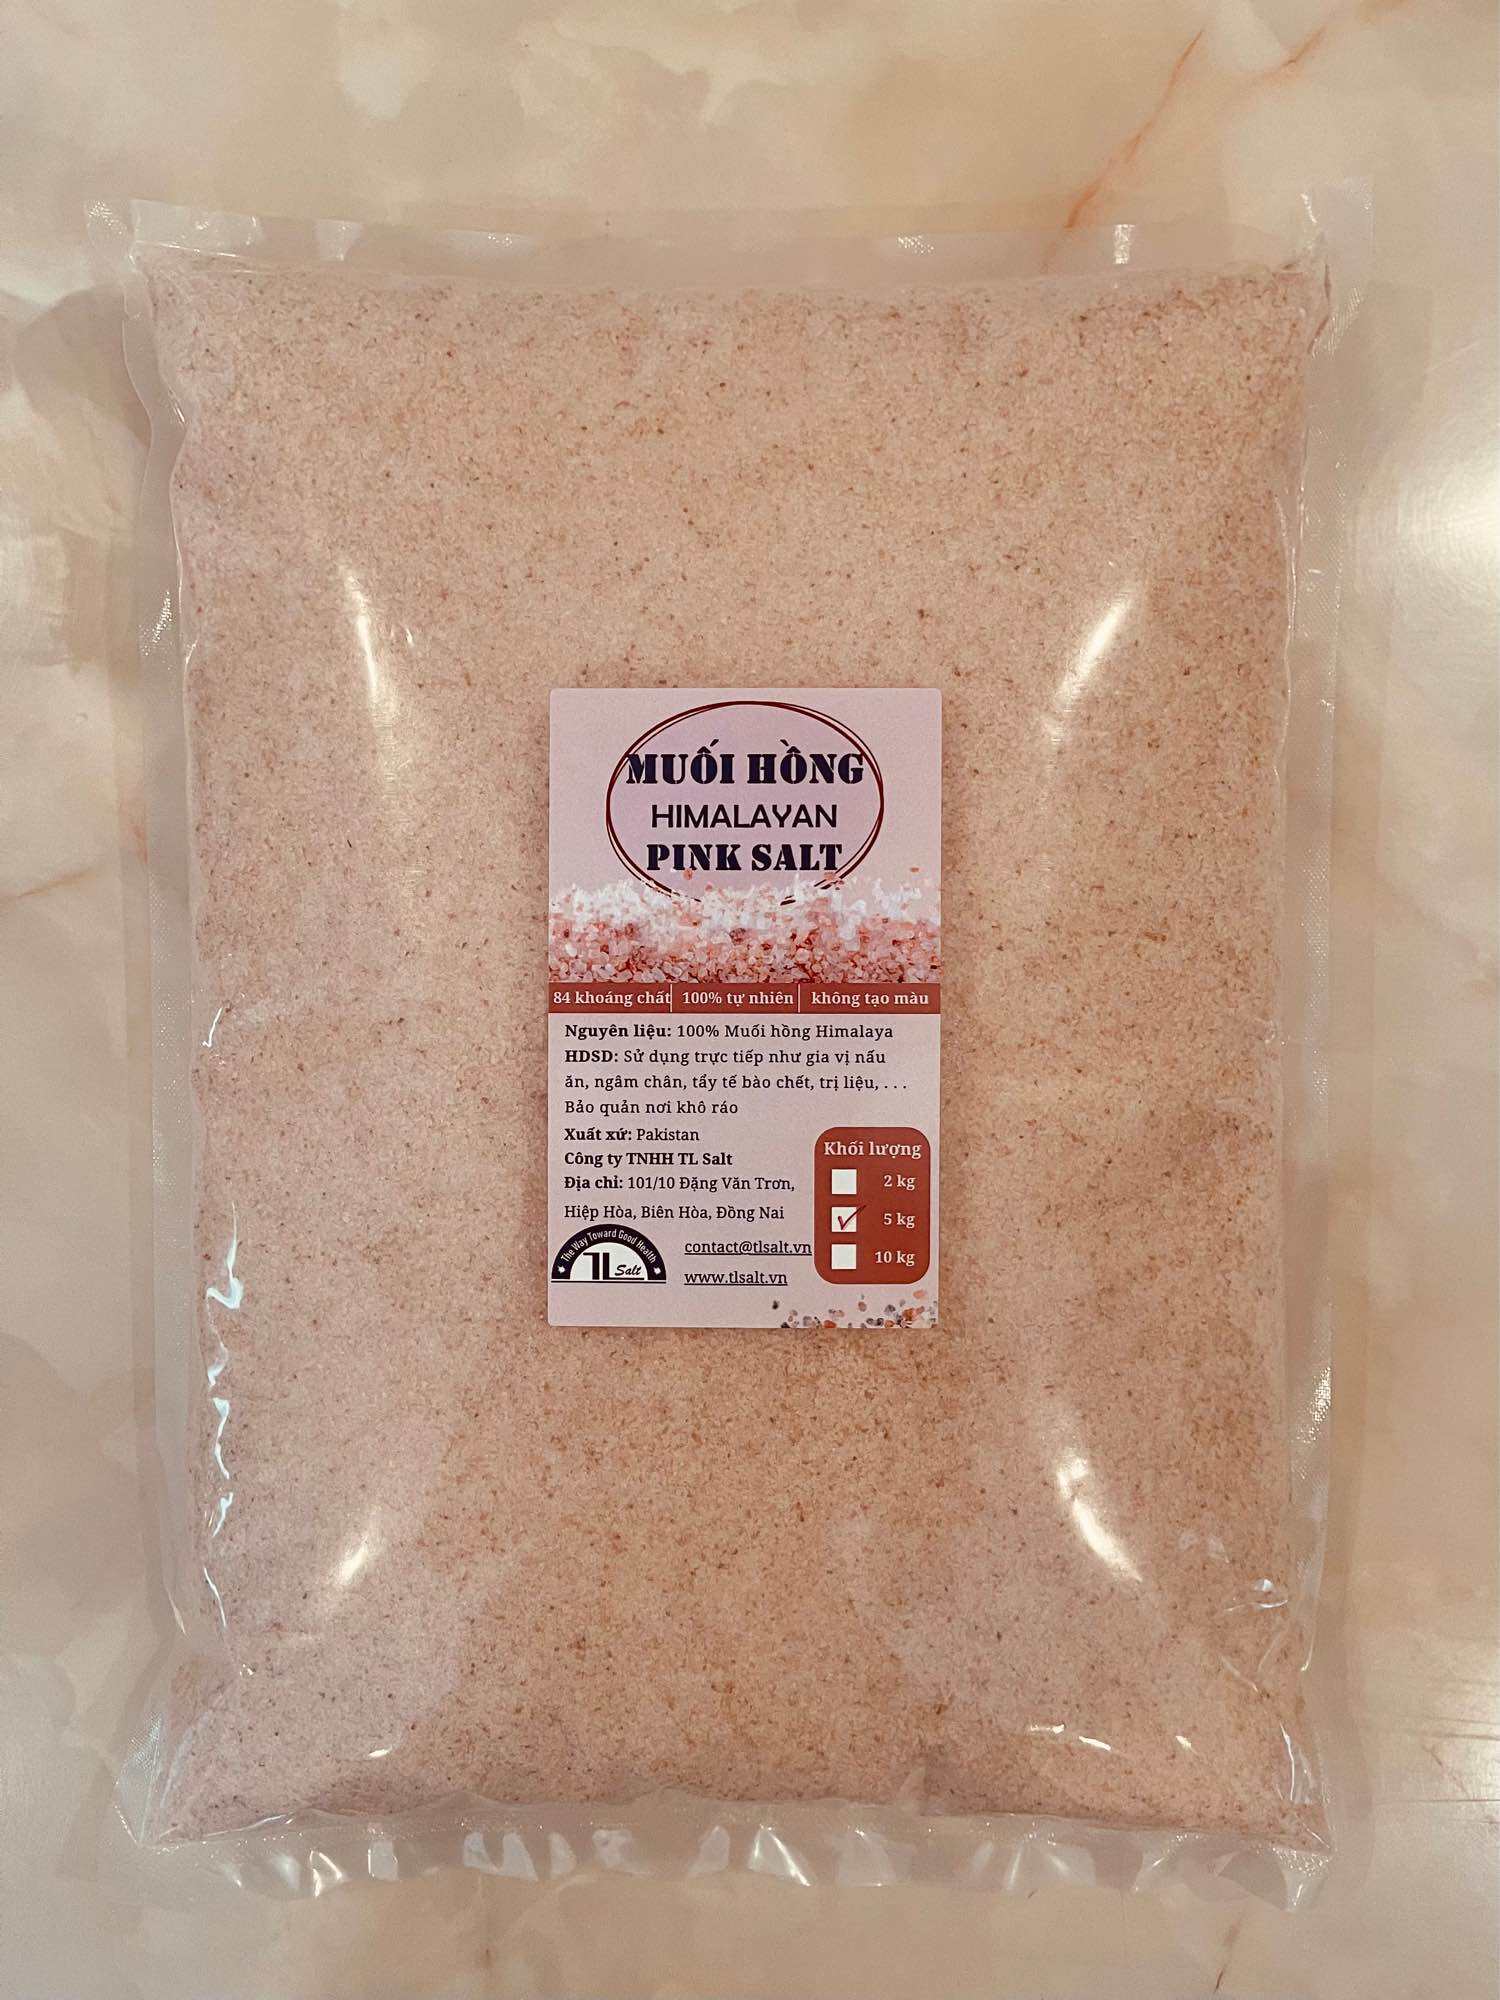 [BÁN SỈ] 10kg Muối hồng Himalaya TL Salt mịn/hạt